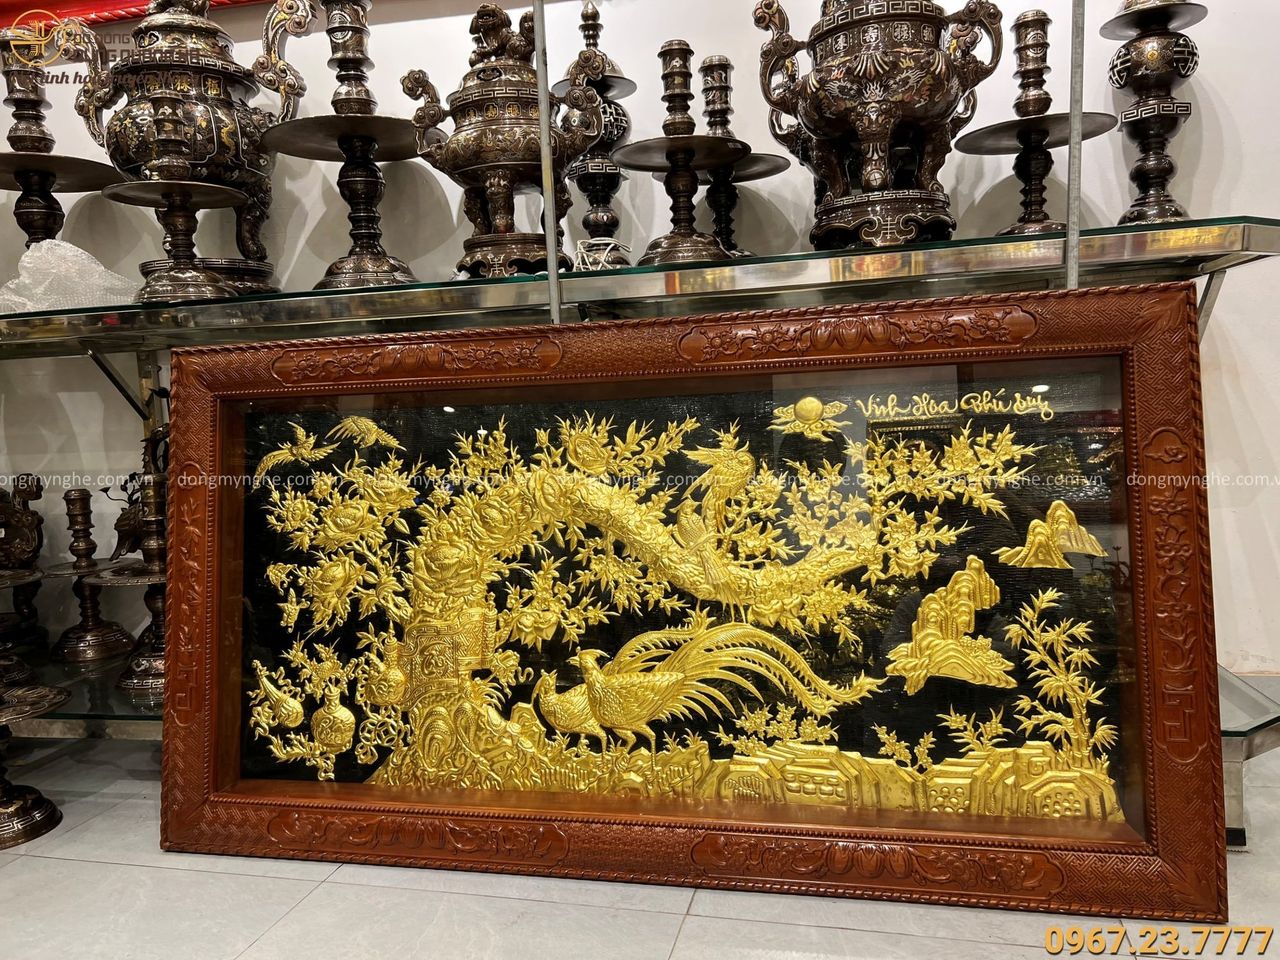 Tranh đồng Vinh Hoa Phú Quý thếp vàng khung gỗ gụ 1m7 x 90cm